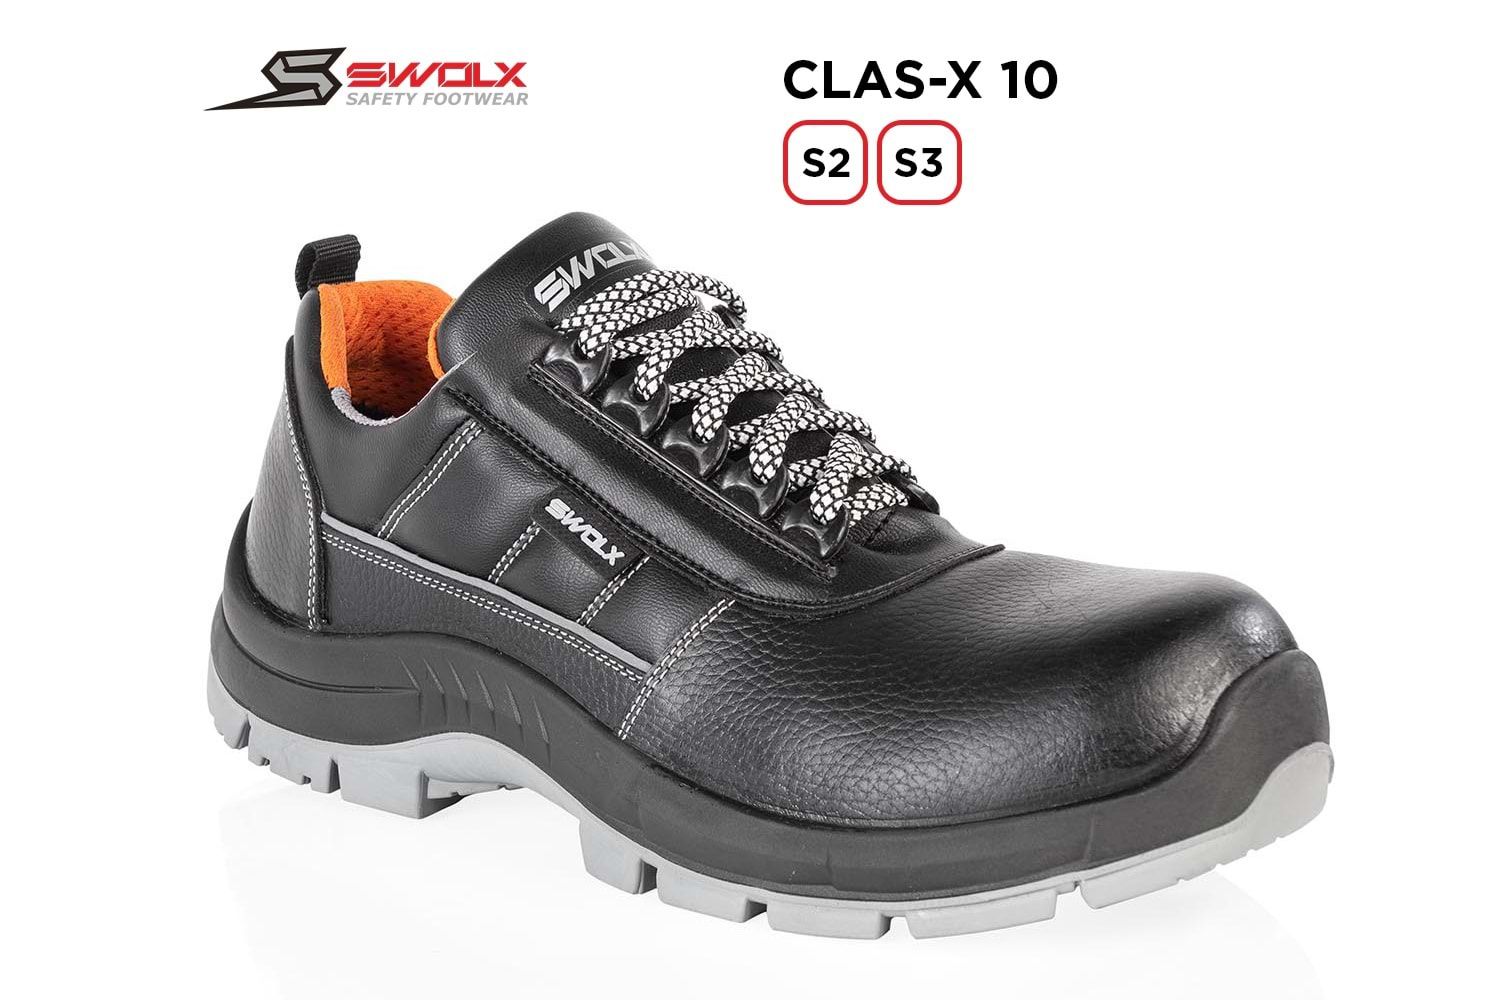 Swolx İş Ayakkabısı - Clas-X 10 S2 - 39